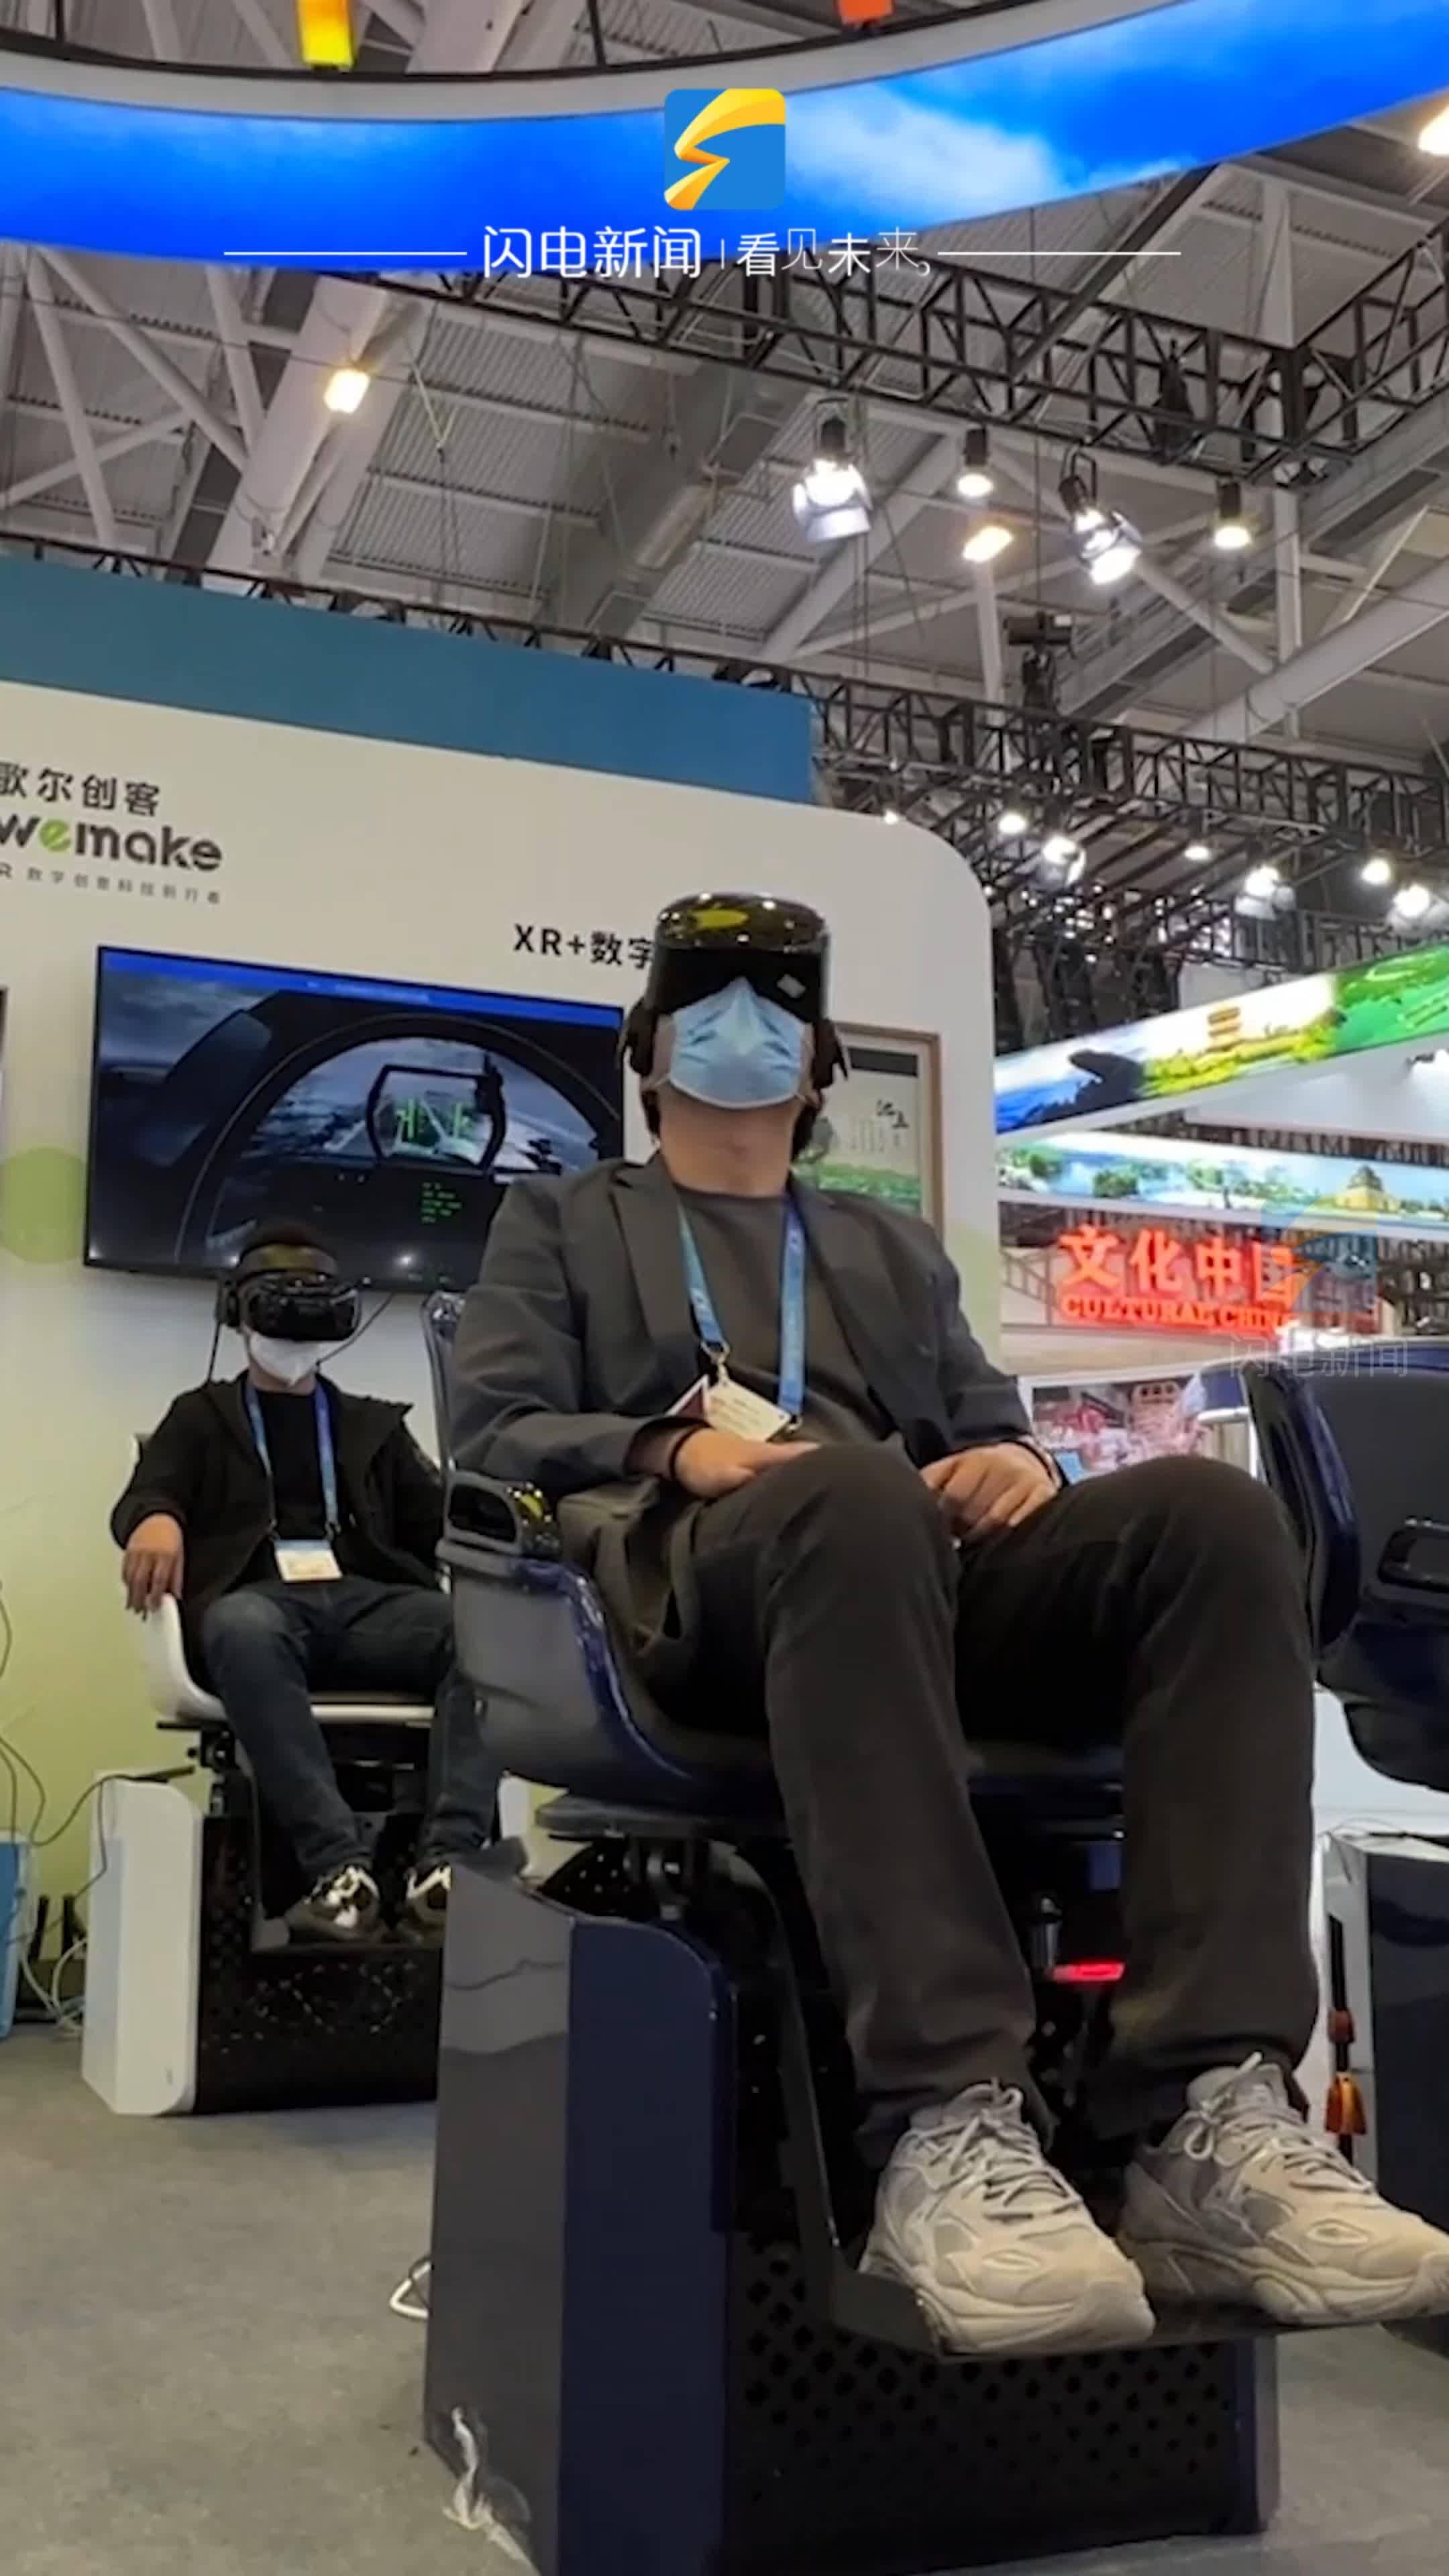 歌尔创客XR+数字影院亮相深圳文博会山东展区，戴上VR头显“驾驶”战机翱翔天地